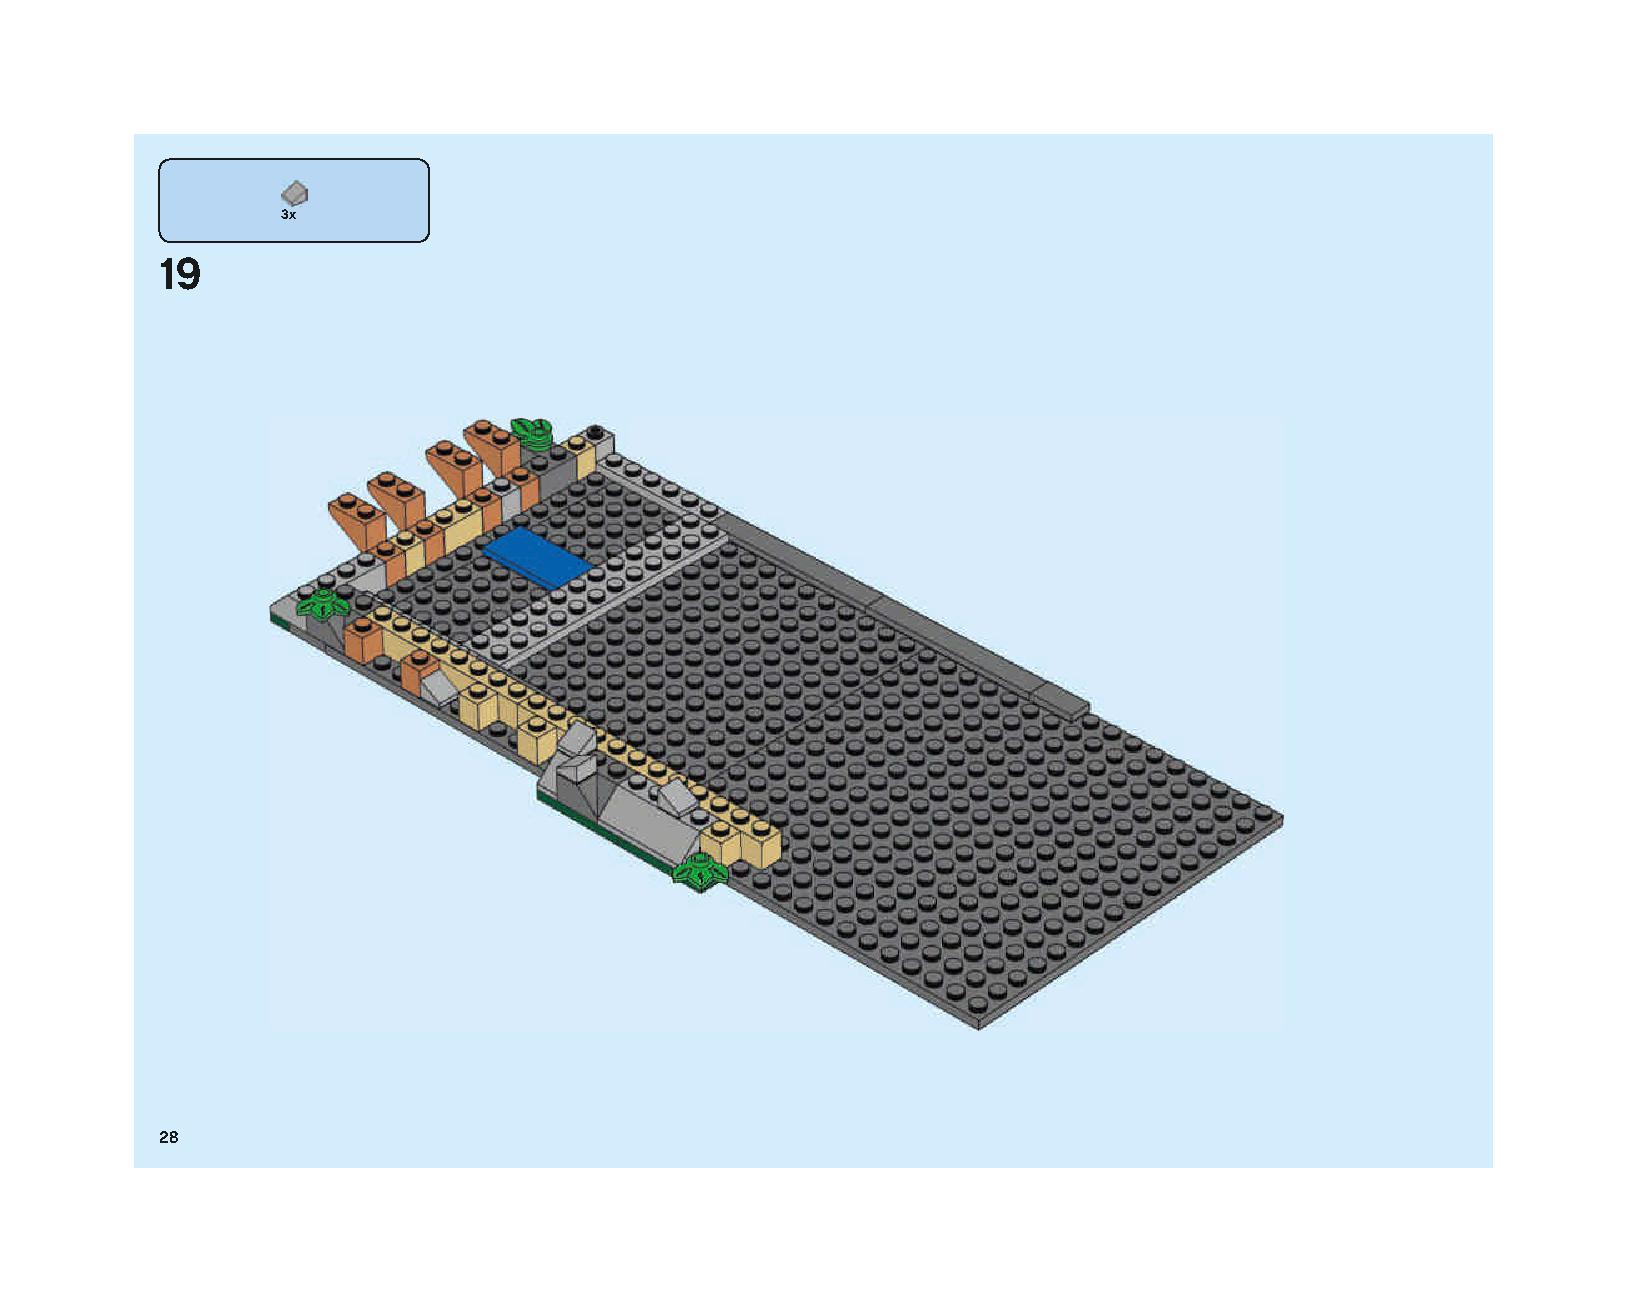 ホグワーツの大広間 75954 レゴの商品情報 レゴの説明書・組立方法 28 page